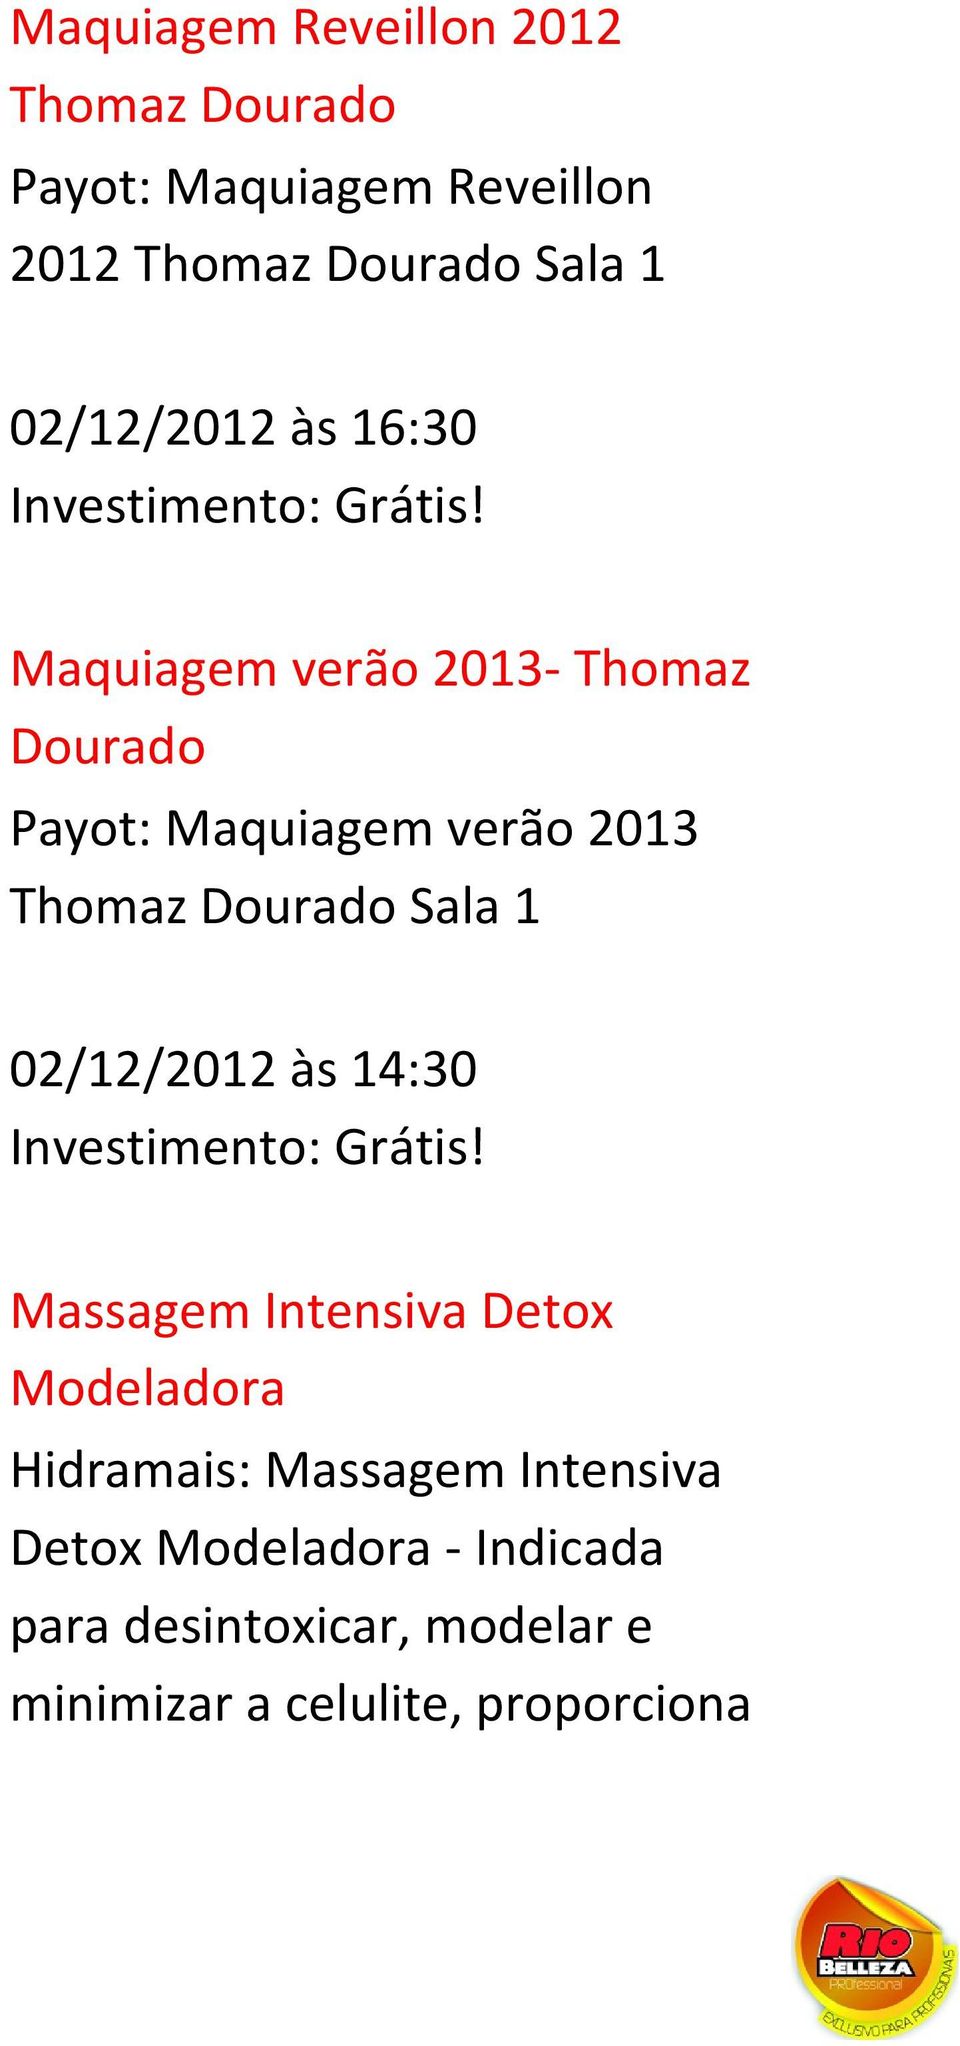 Dourado Sala 1 02/12/2012 às 14:30 Massagem Intensiva Detox Modeladora Hidramais: Massagem